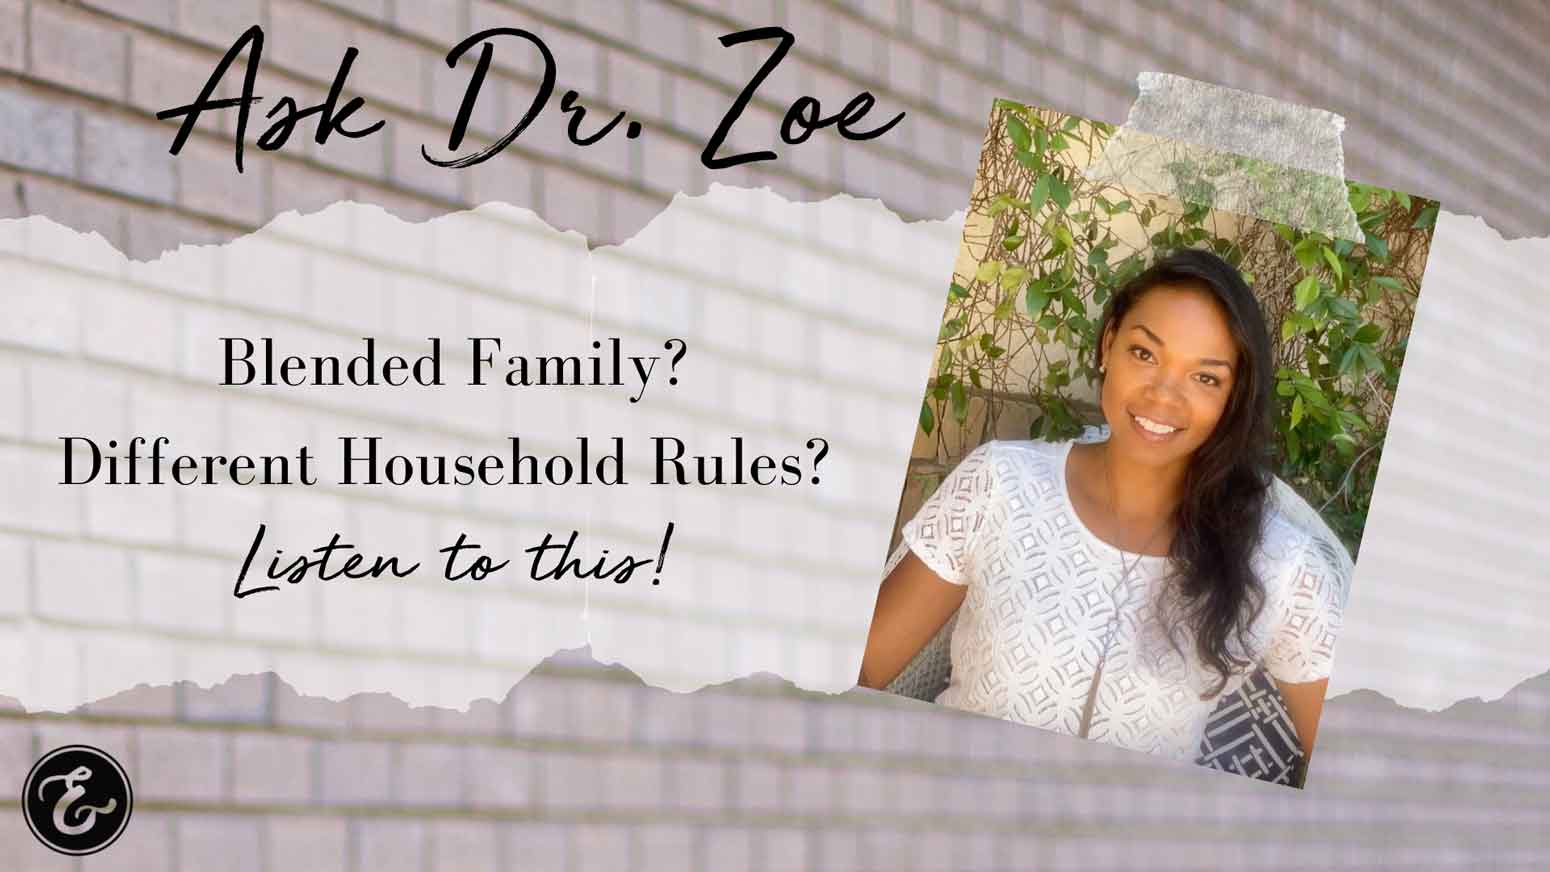 Dr Zoe blended family